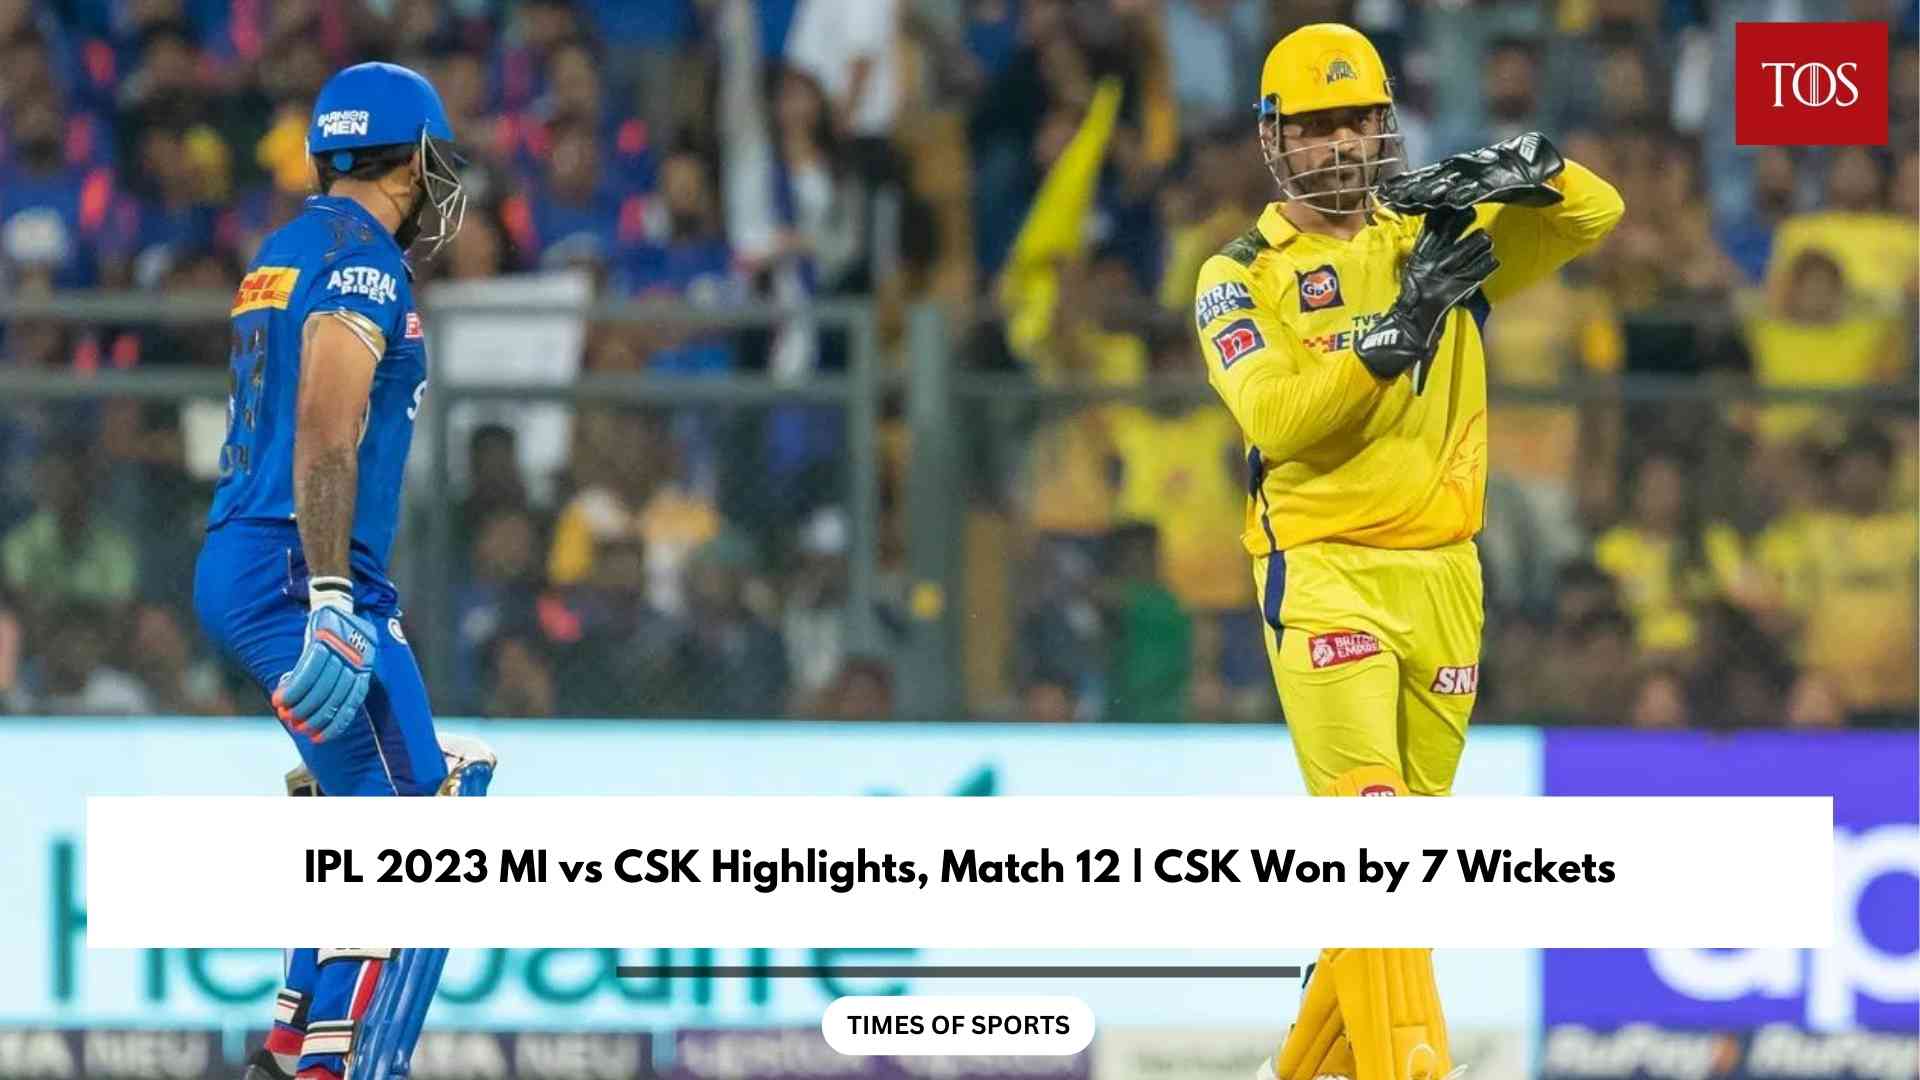 IPL 2023 MI vs CSK Highlights